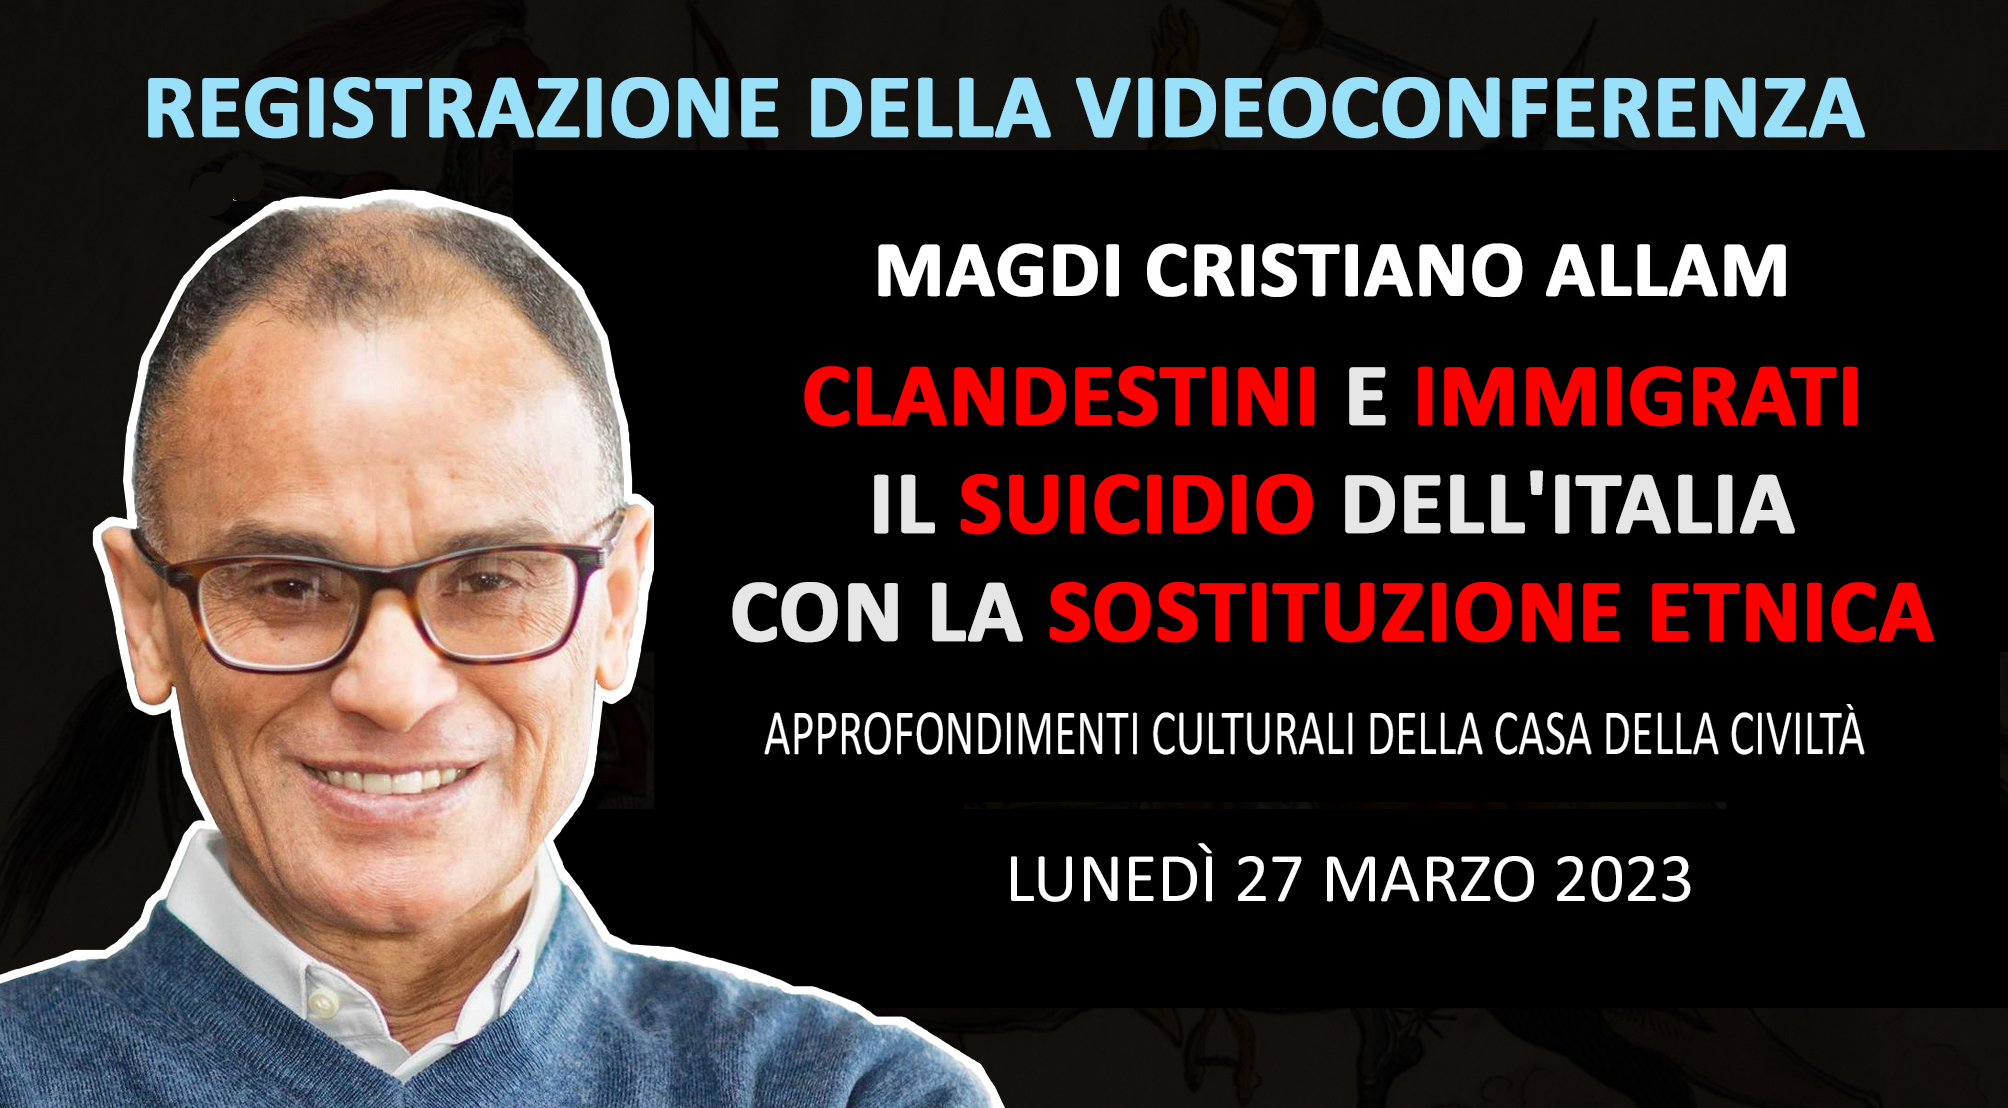 Registrazione della videoconferenza di MAGDI CRISTIANO ALLAM “Clandestini e immigrati. Il suicidio dell’Italia con la sostituzione etnica” (Lunedì 27 marzo 2023)